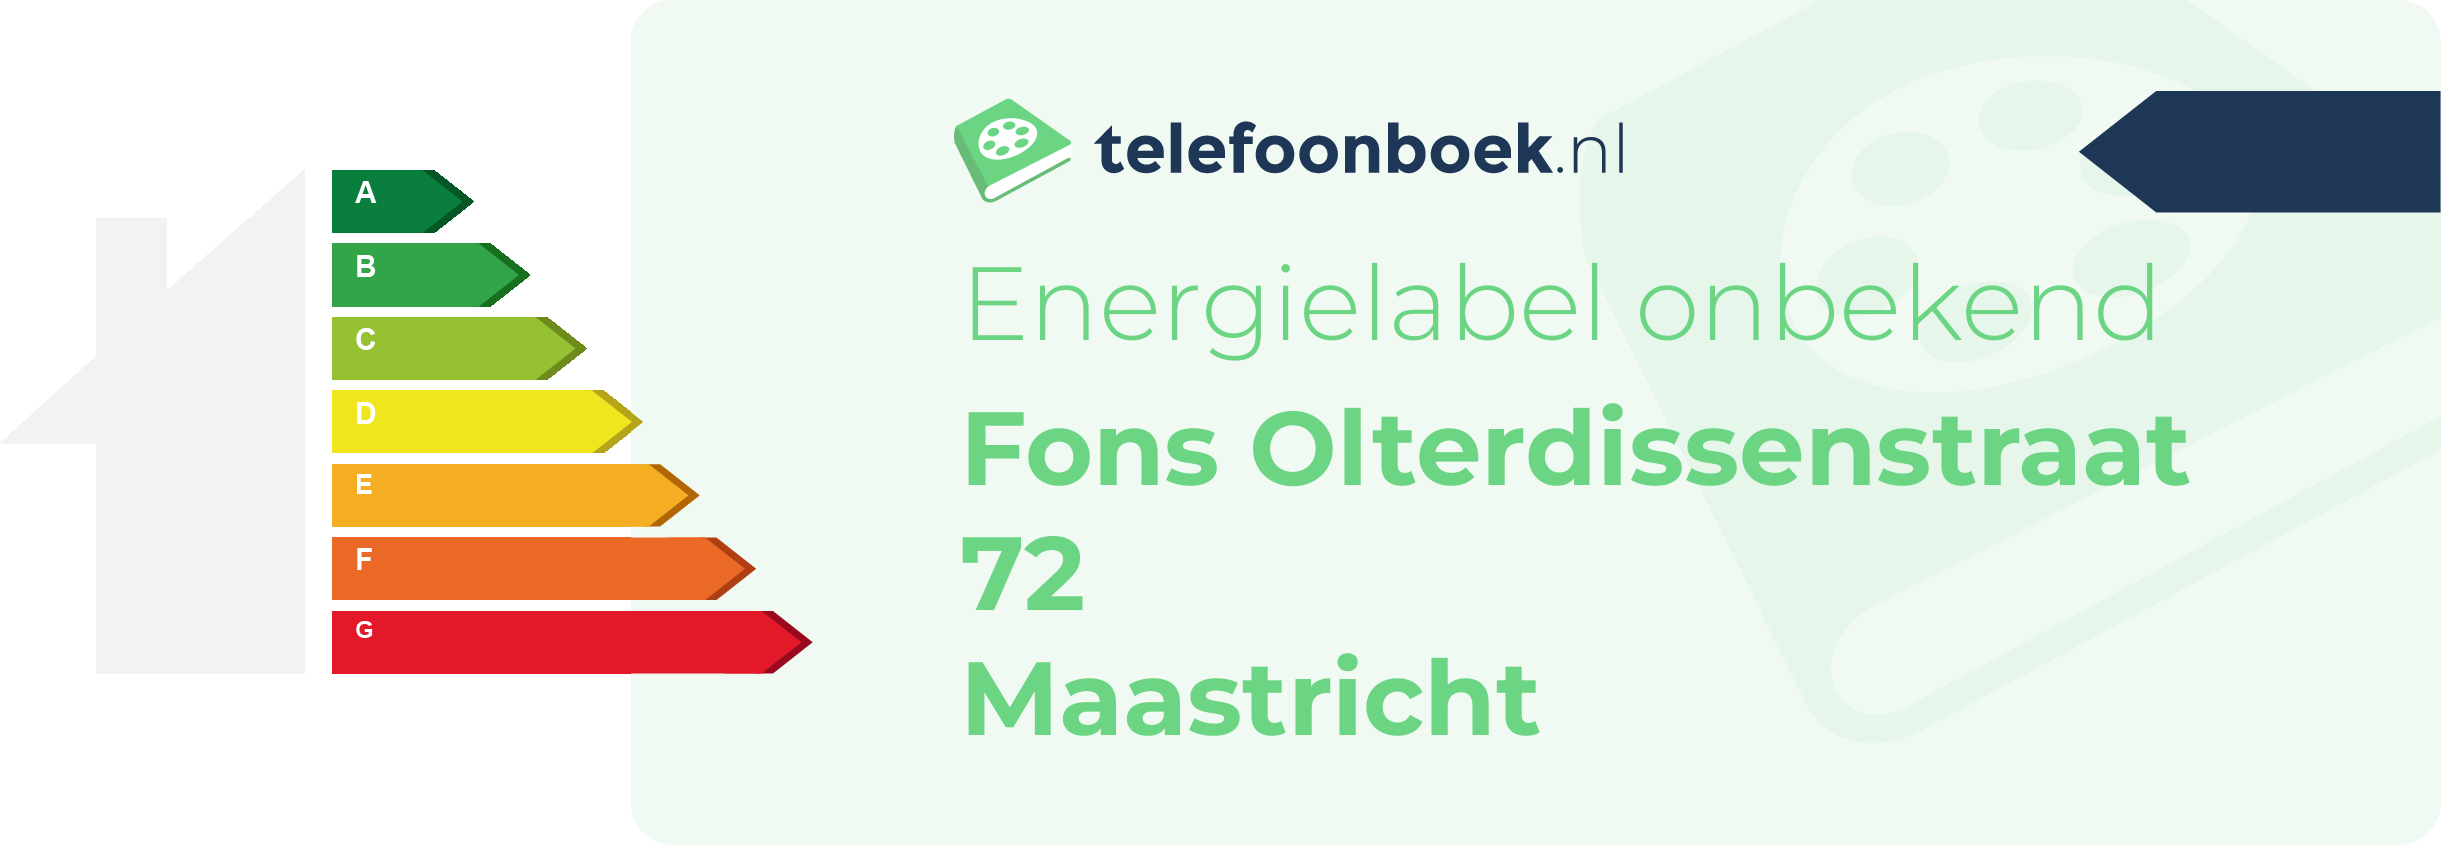 Energielabel Fons Olterdissenstraat 72 Maastricht